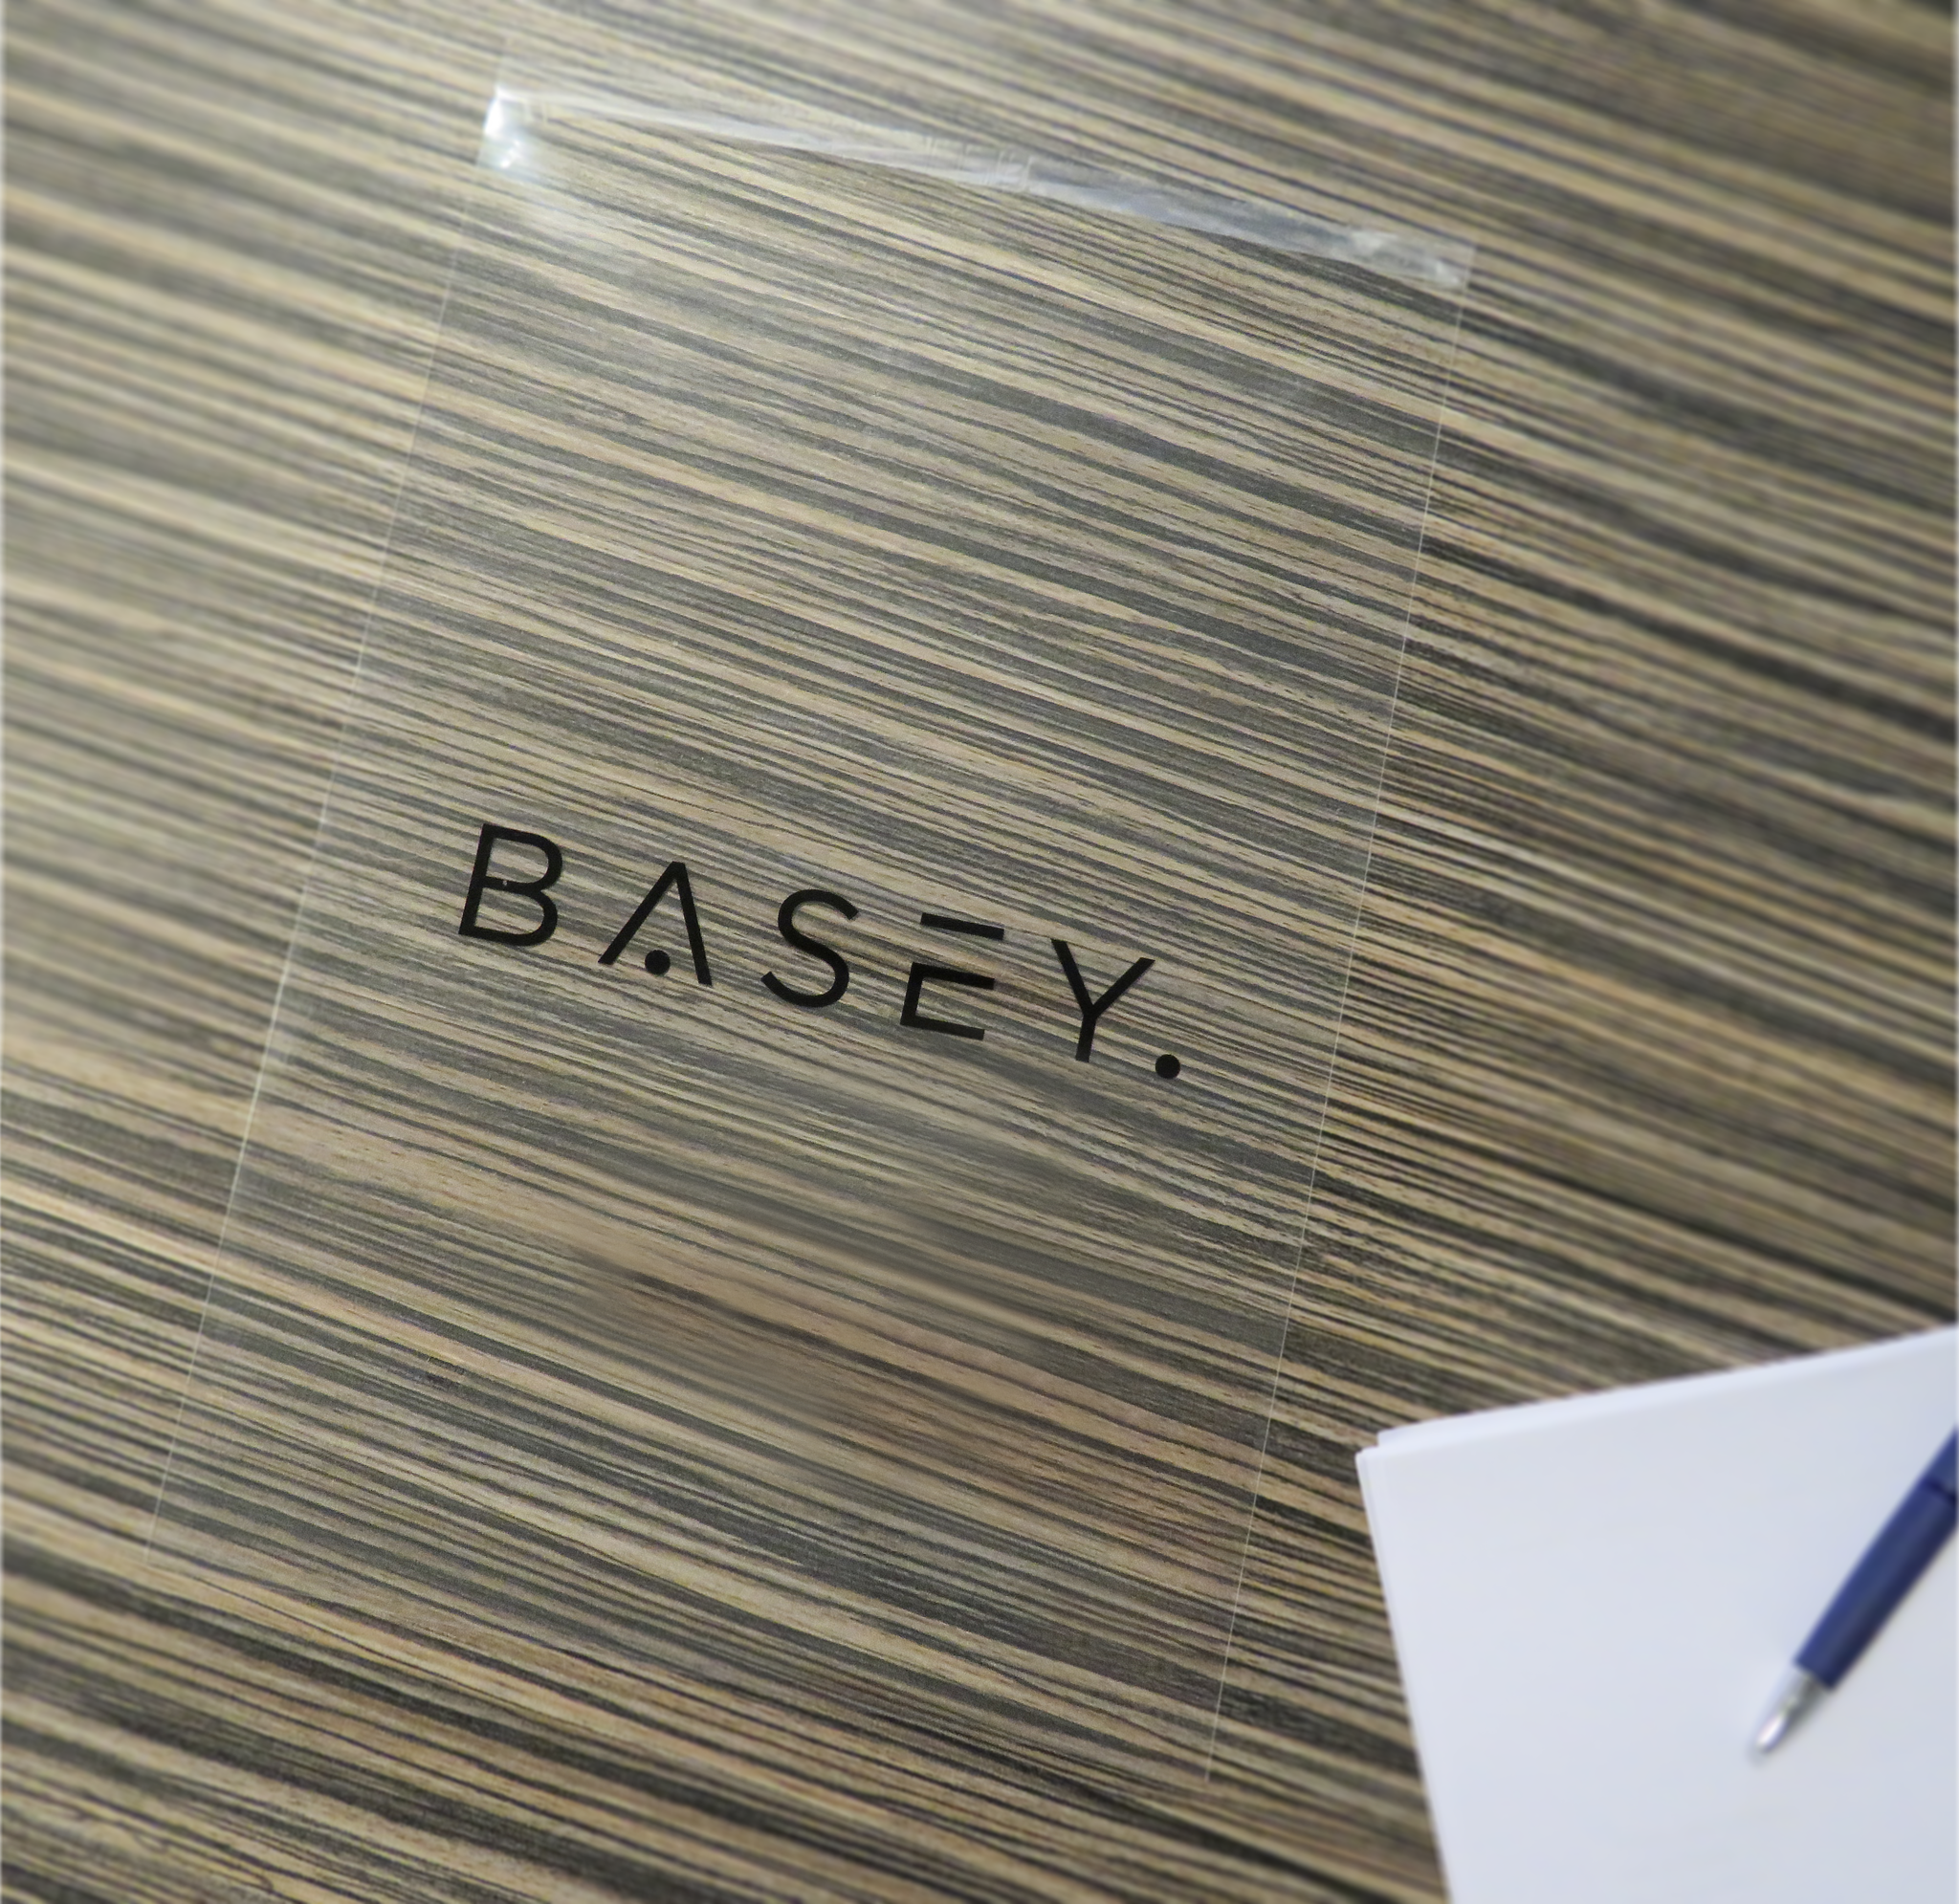 BASEY. BASEY. iPad Pro 11 inch (2022) Kinderhoes Met 2x Screenprotector - Paars